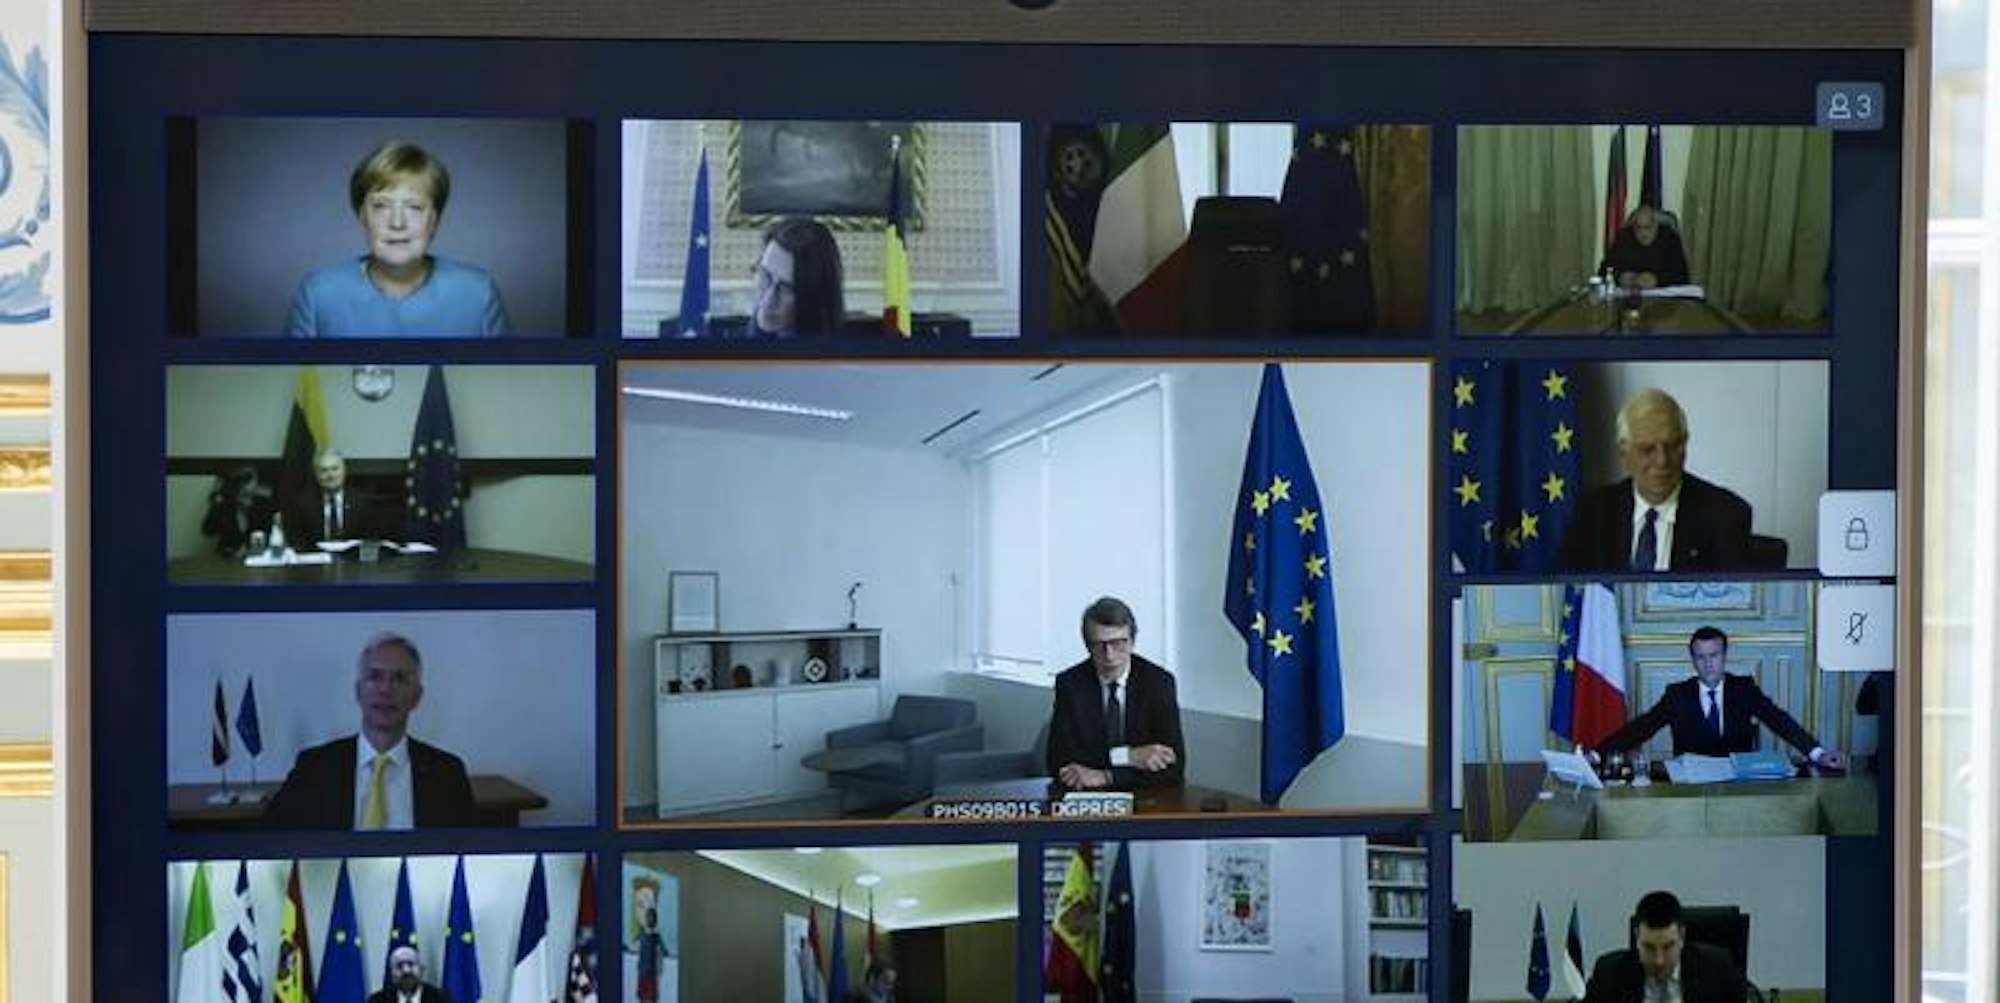 Bundeskanzlerin Merkel (oben links) und andere europäische Staats- und Regierungschefs, sowie Mitglieder des Europäischen Rates, sind während einer Videokonferenz auf einem Bildschirm zu sehen.